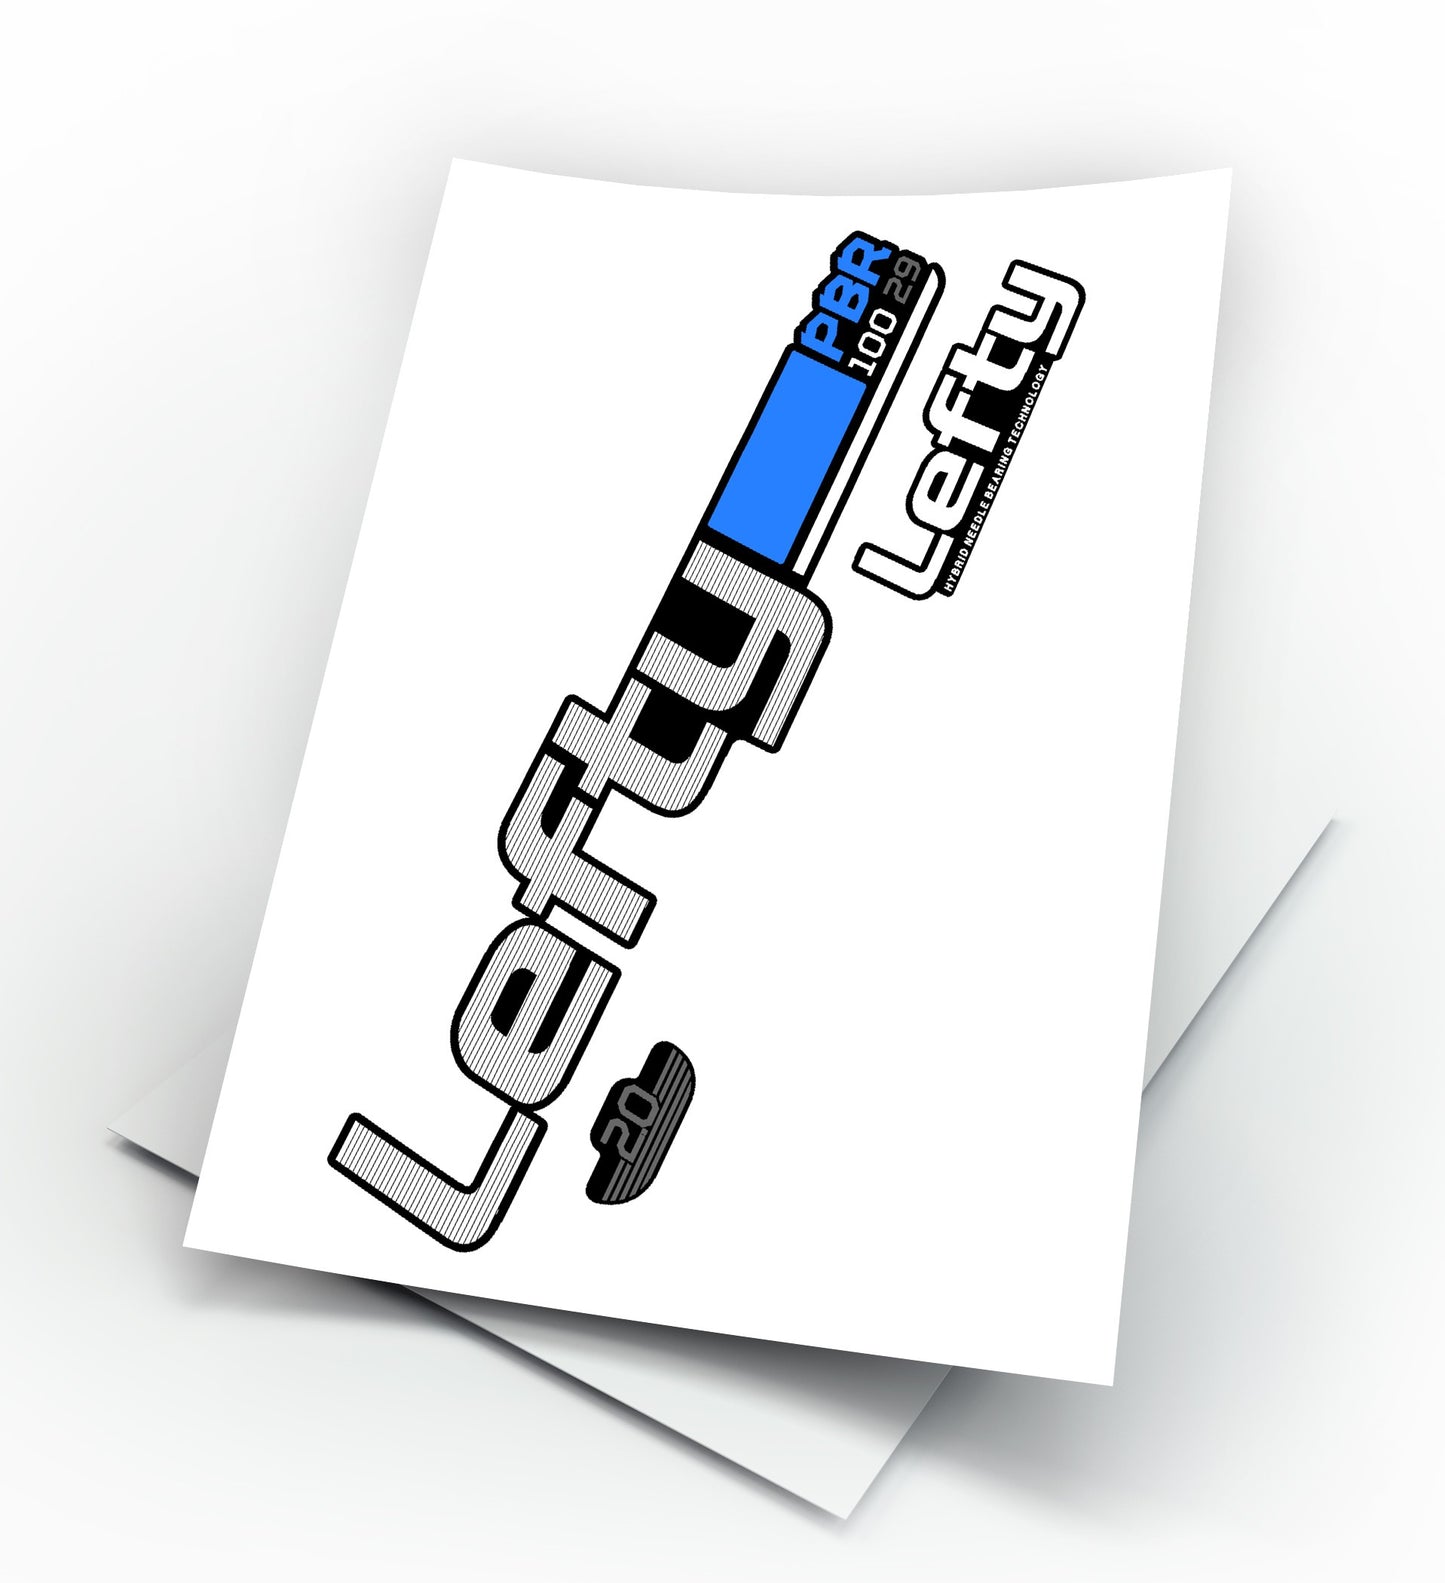 Lefty PBR 100 29 anno 2015 - Kit adesivi forcella personalizzabile